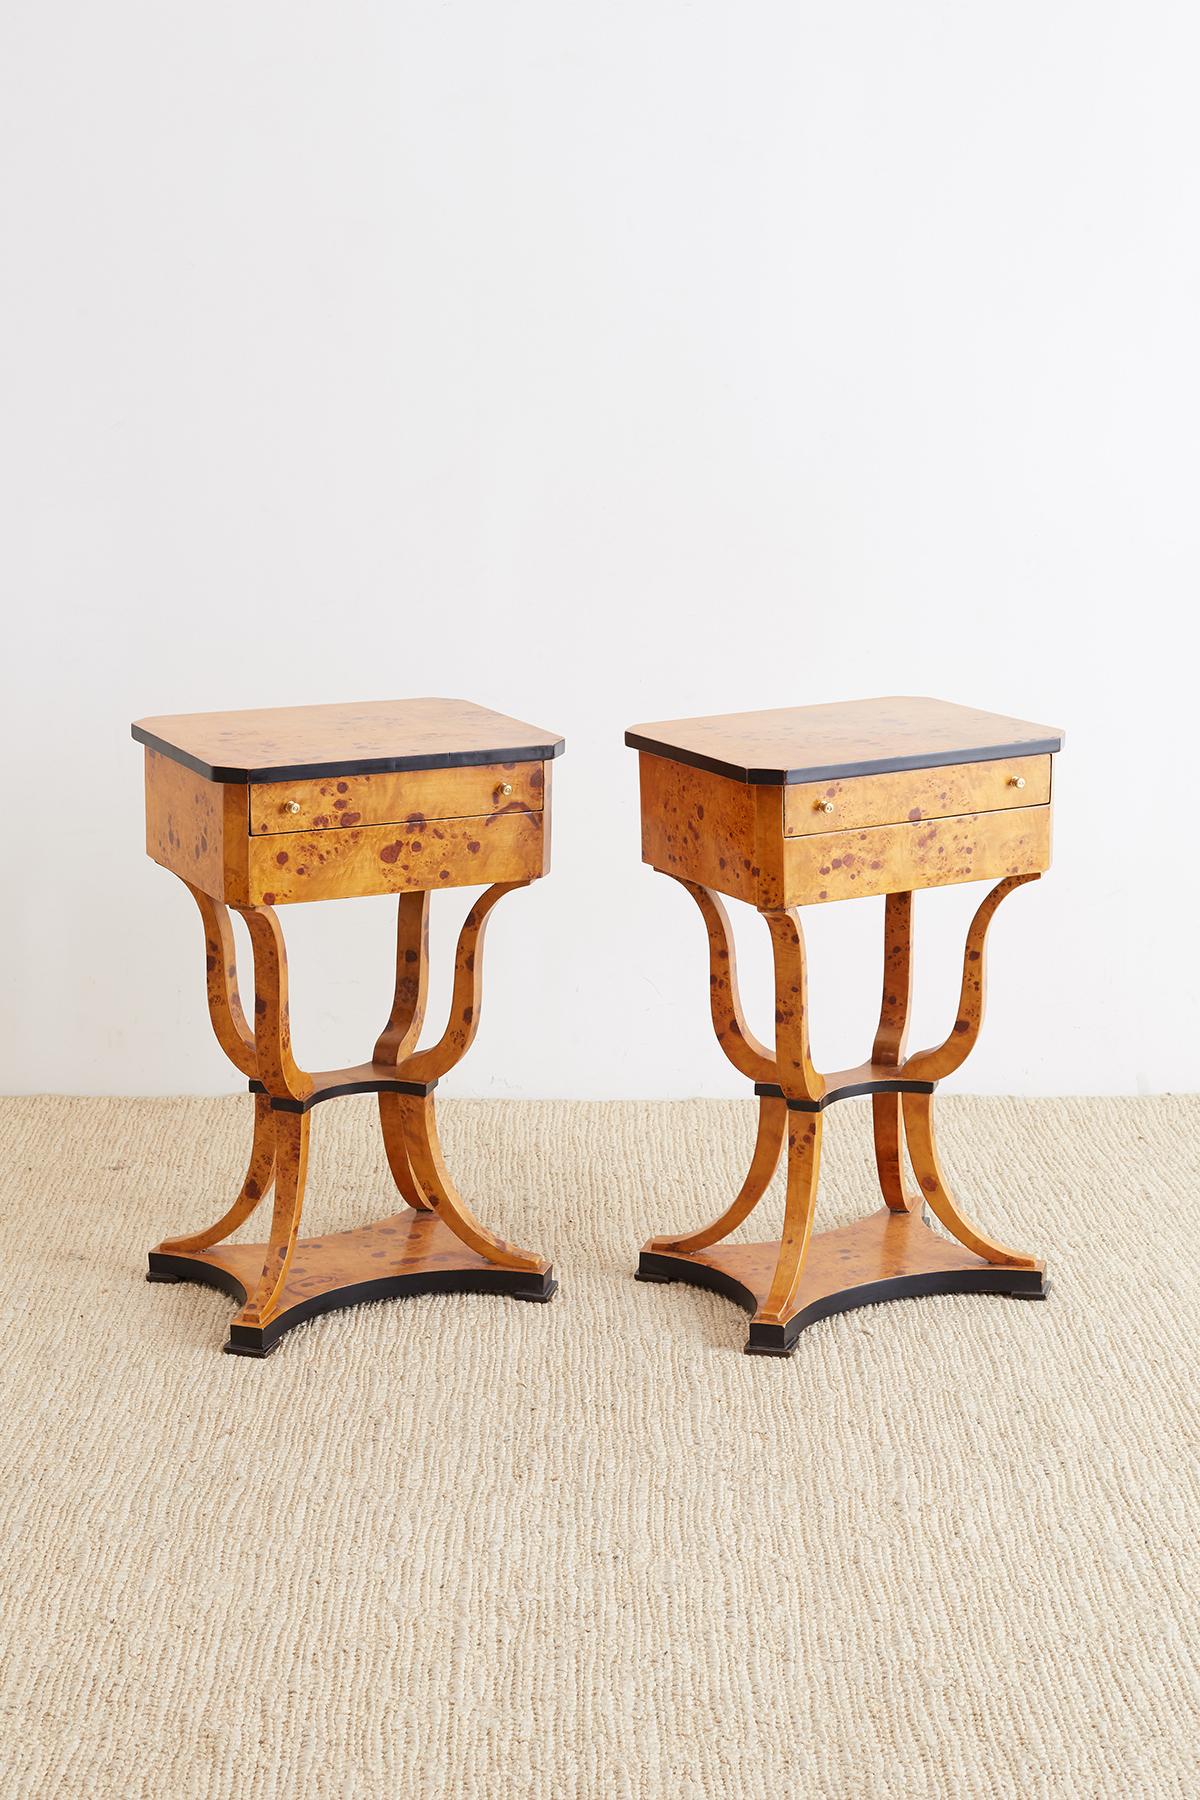 European Pair of Swedish Biedermeier Style Sewing Table or Nightstands